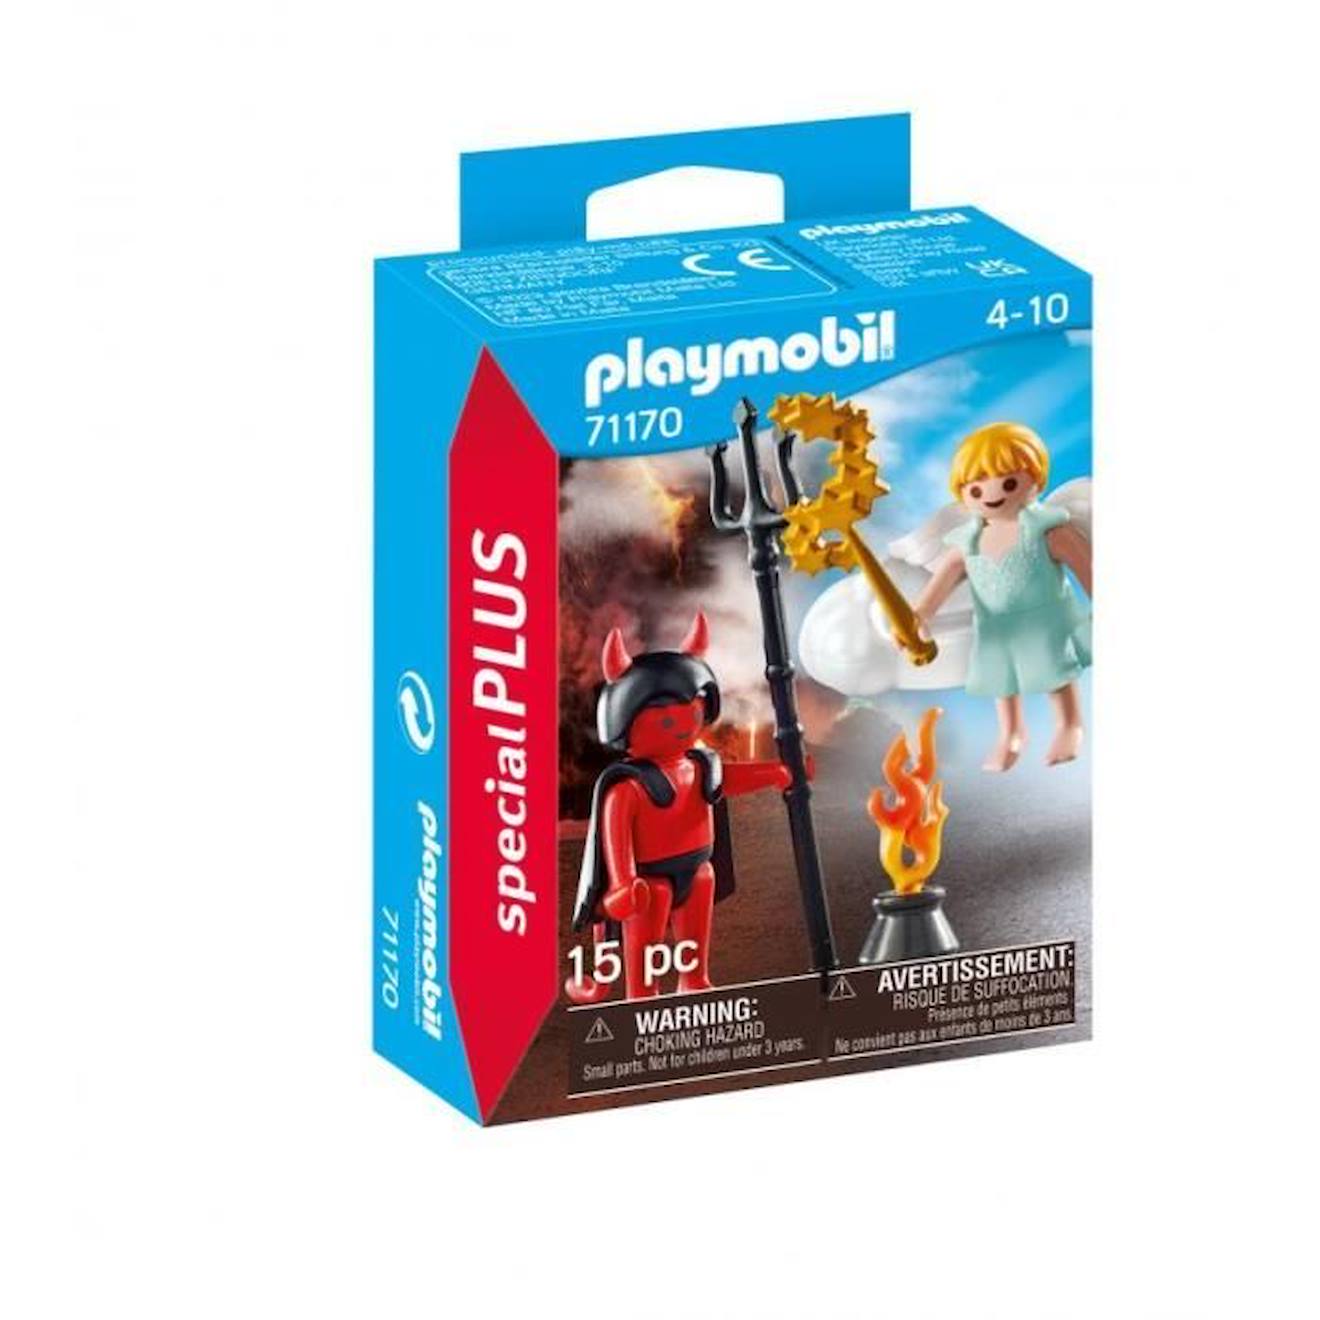 Playmobil - 71170 - Ange Et Démon Special Plus - Enfant - Multicolore - 2 Personnages Et Accessoires